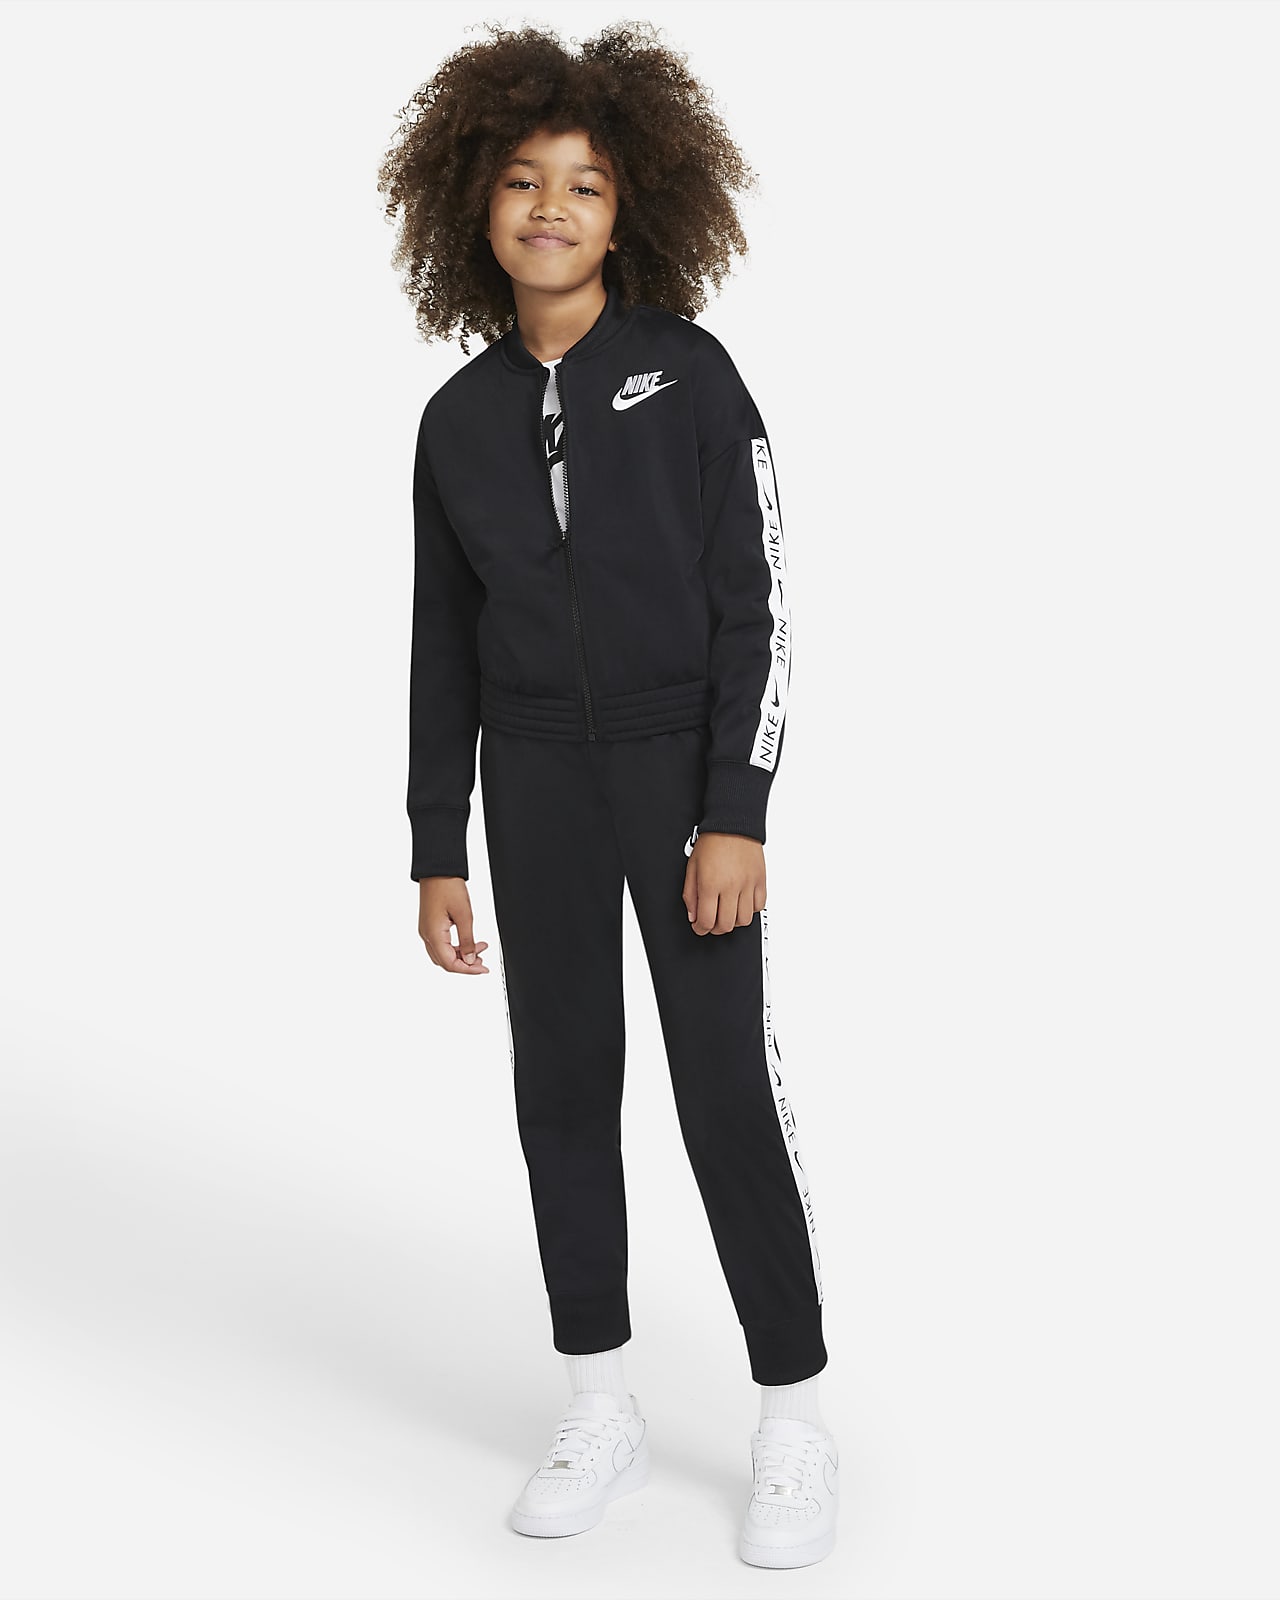 Survêtement Nike Sportswear pour Fille plus âgée. Nike LU